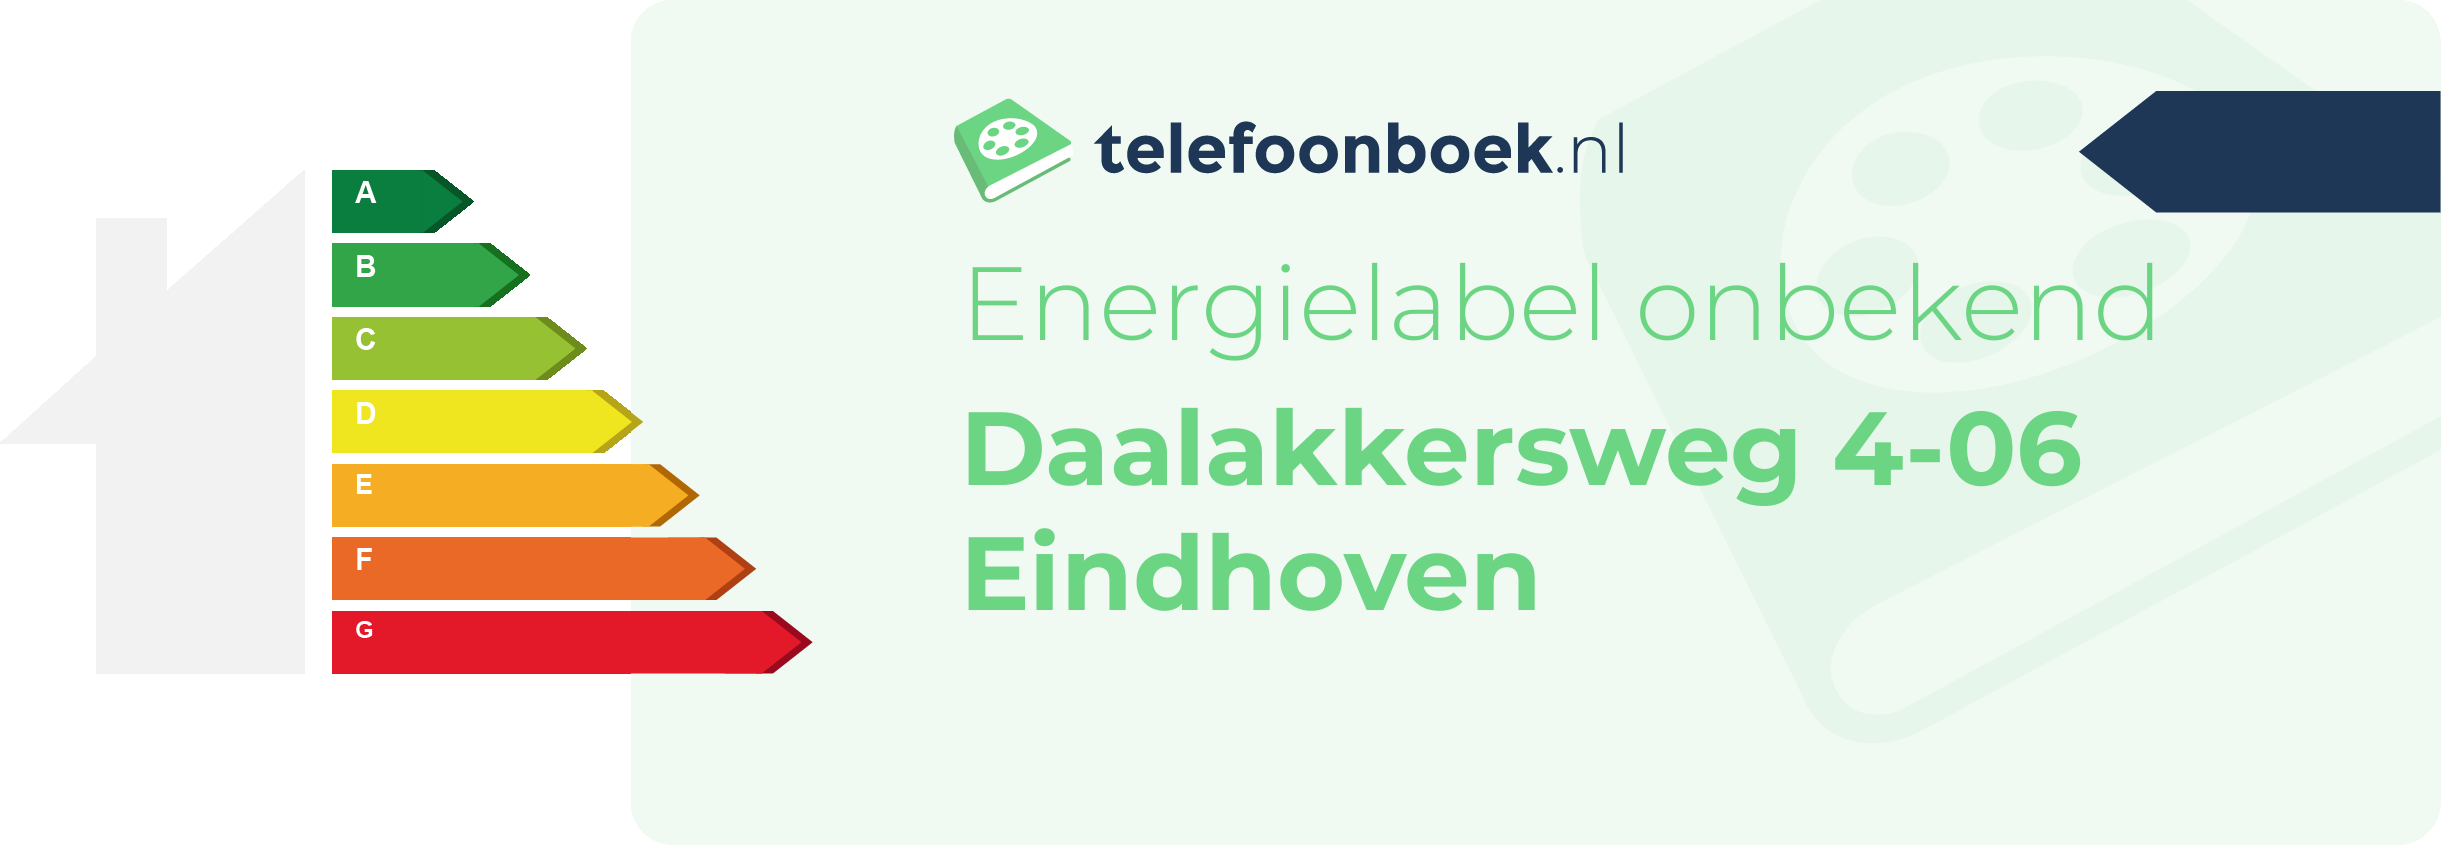 Energielabel Daalakkersweg 4-06 Eindhoven